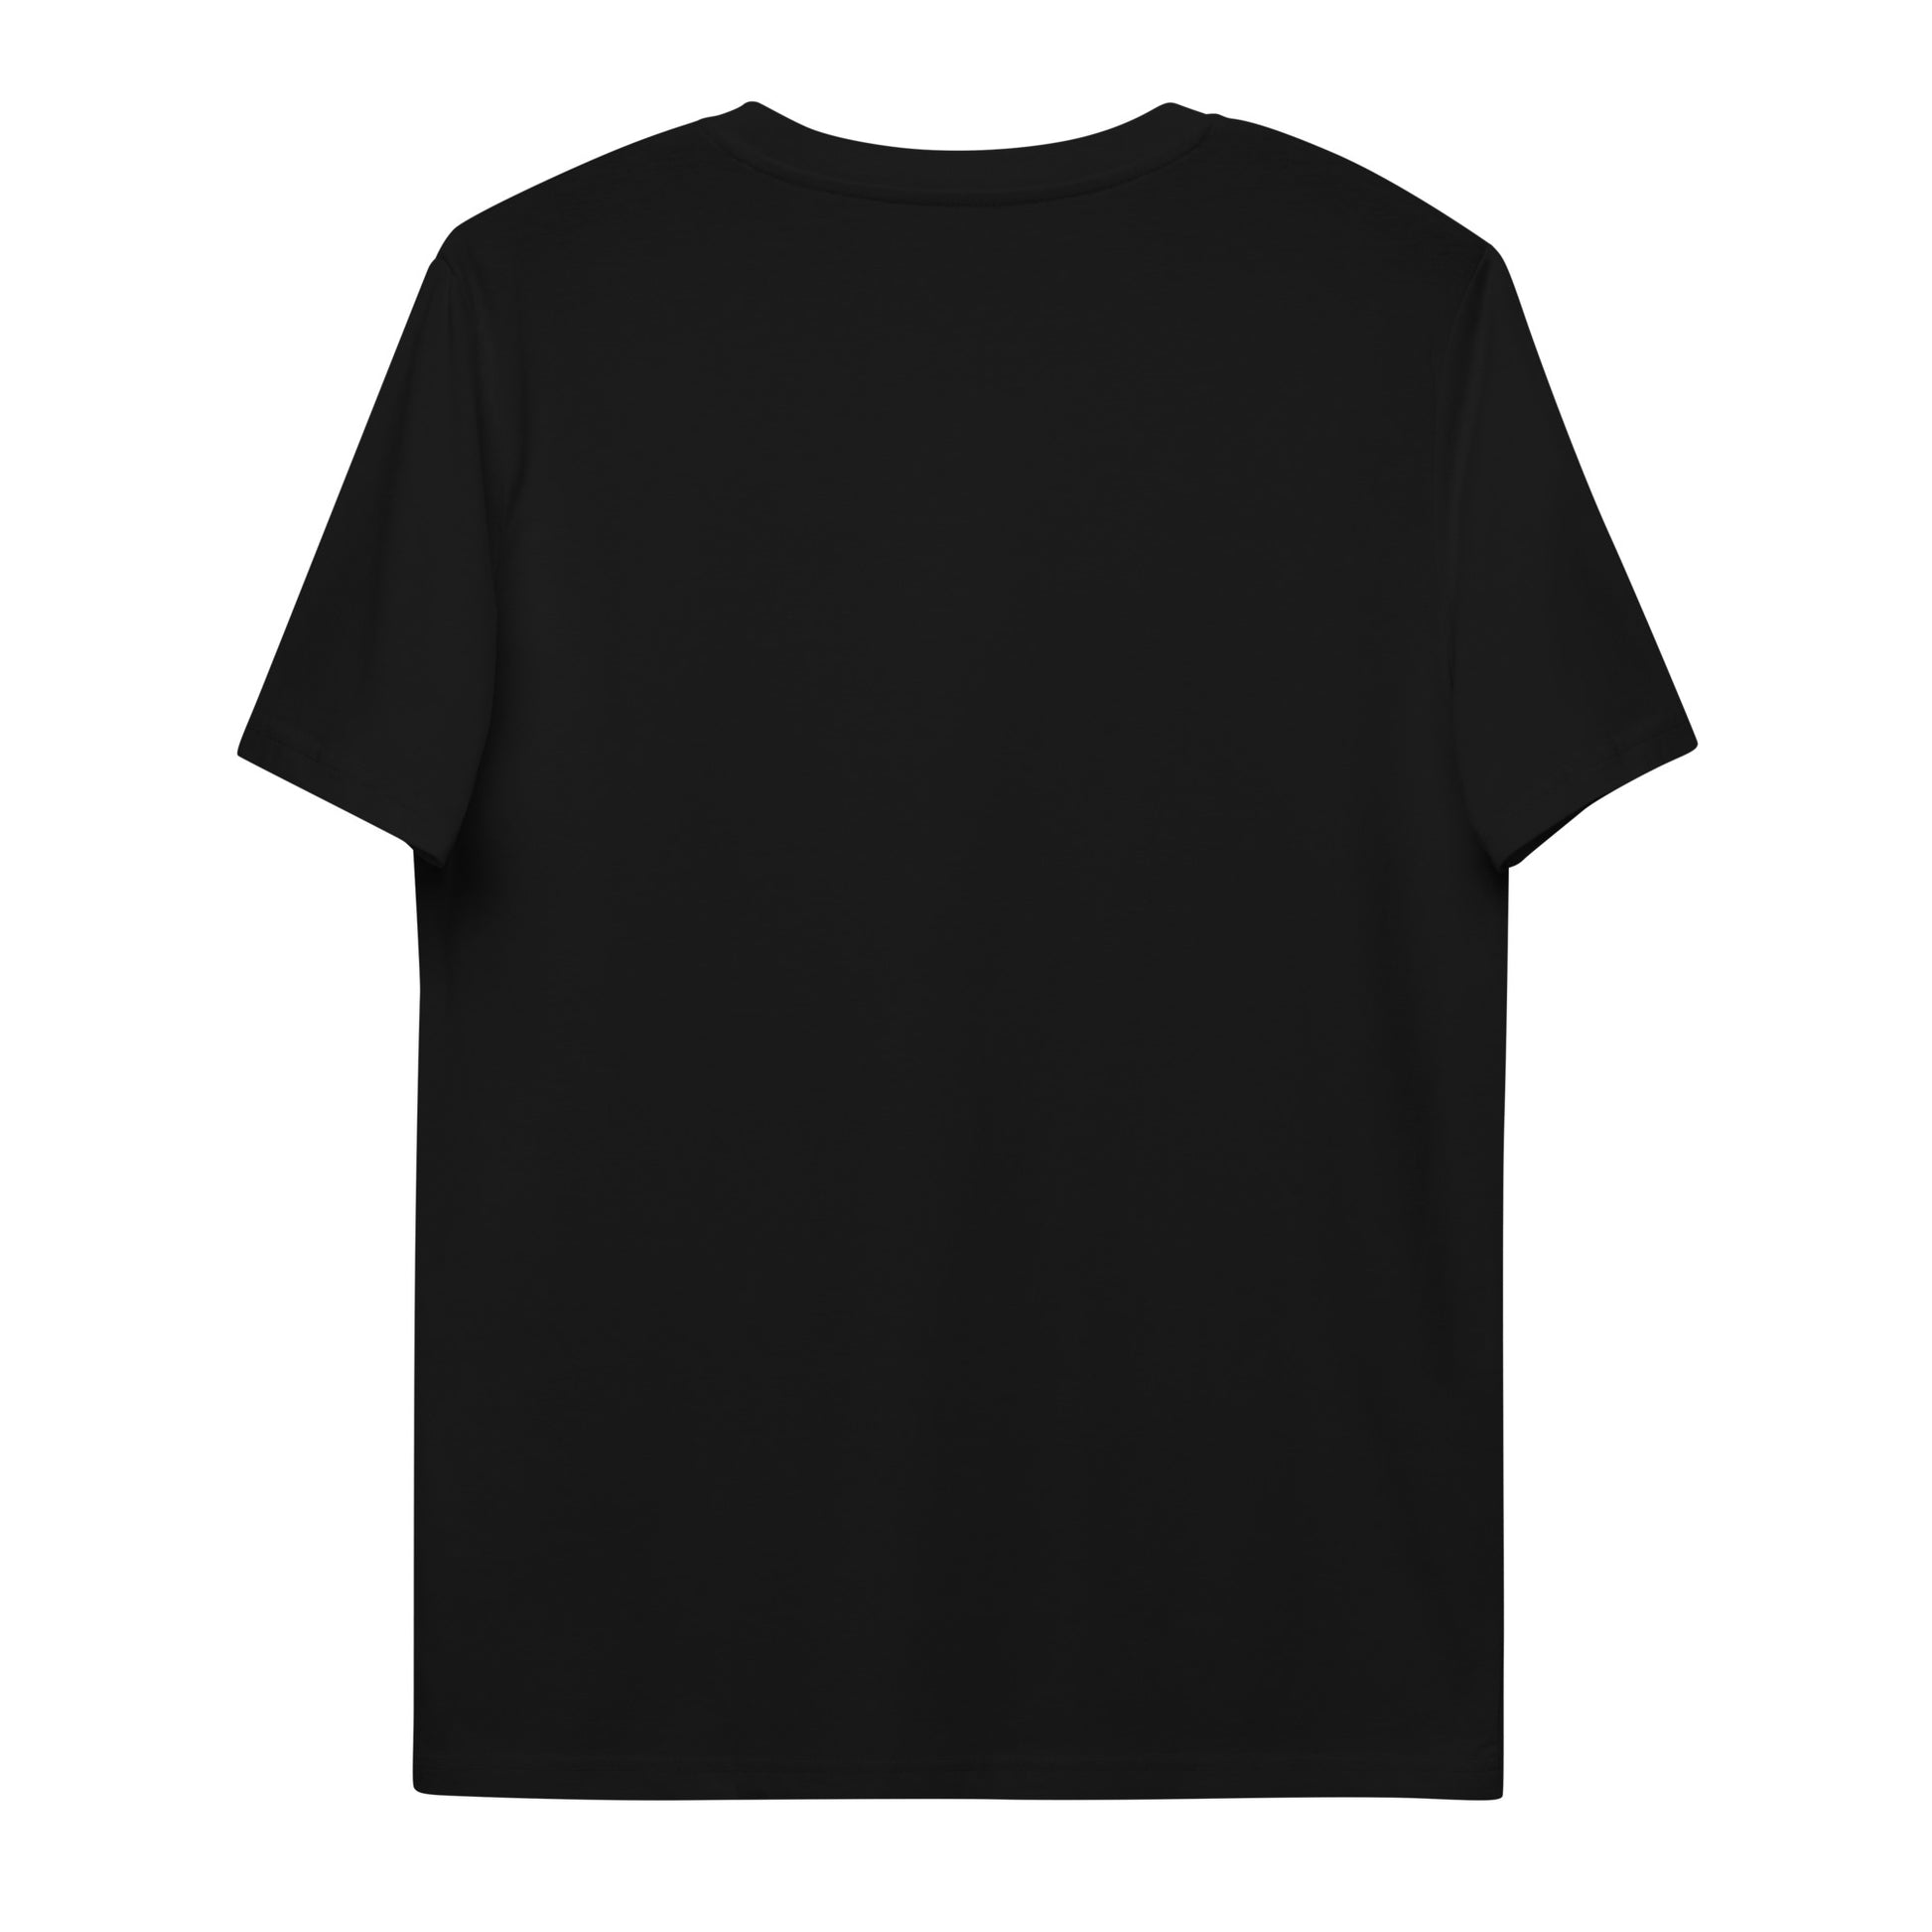 T-shirt unisexe noir photographié de dos.